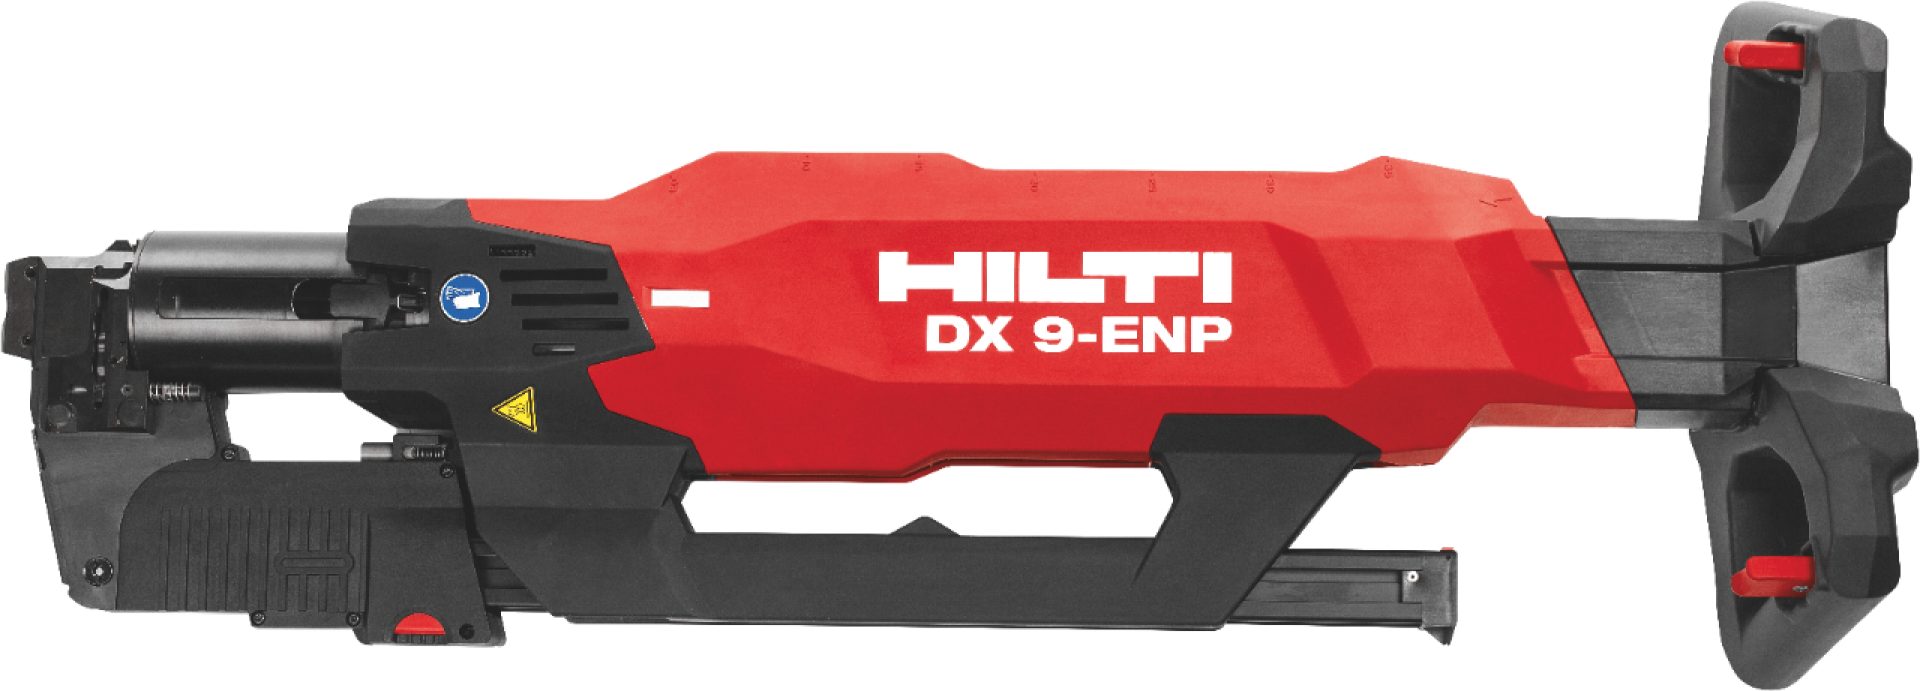 W pełni automatyczny osadzak DX 860 Hilti